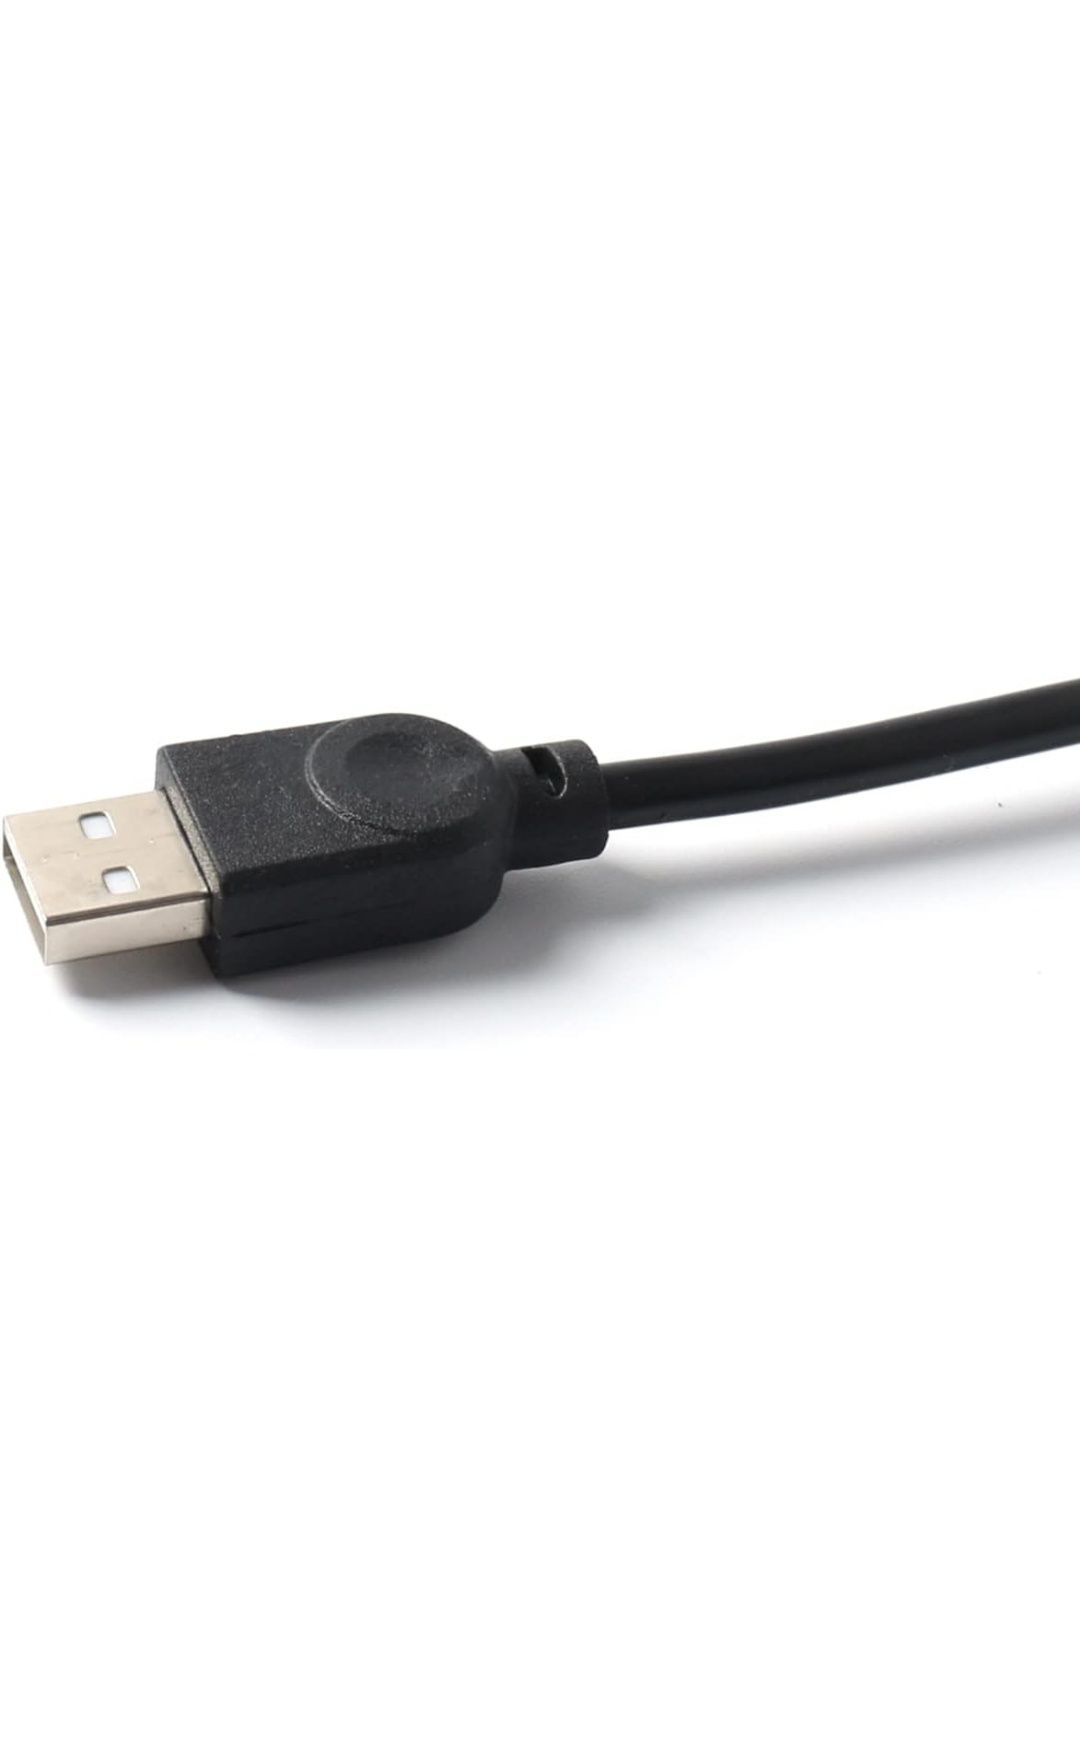 Adaptador USB Shifter (Caixa de mudanças) Logitech G29 G25 G27